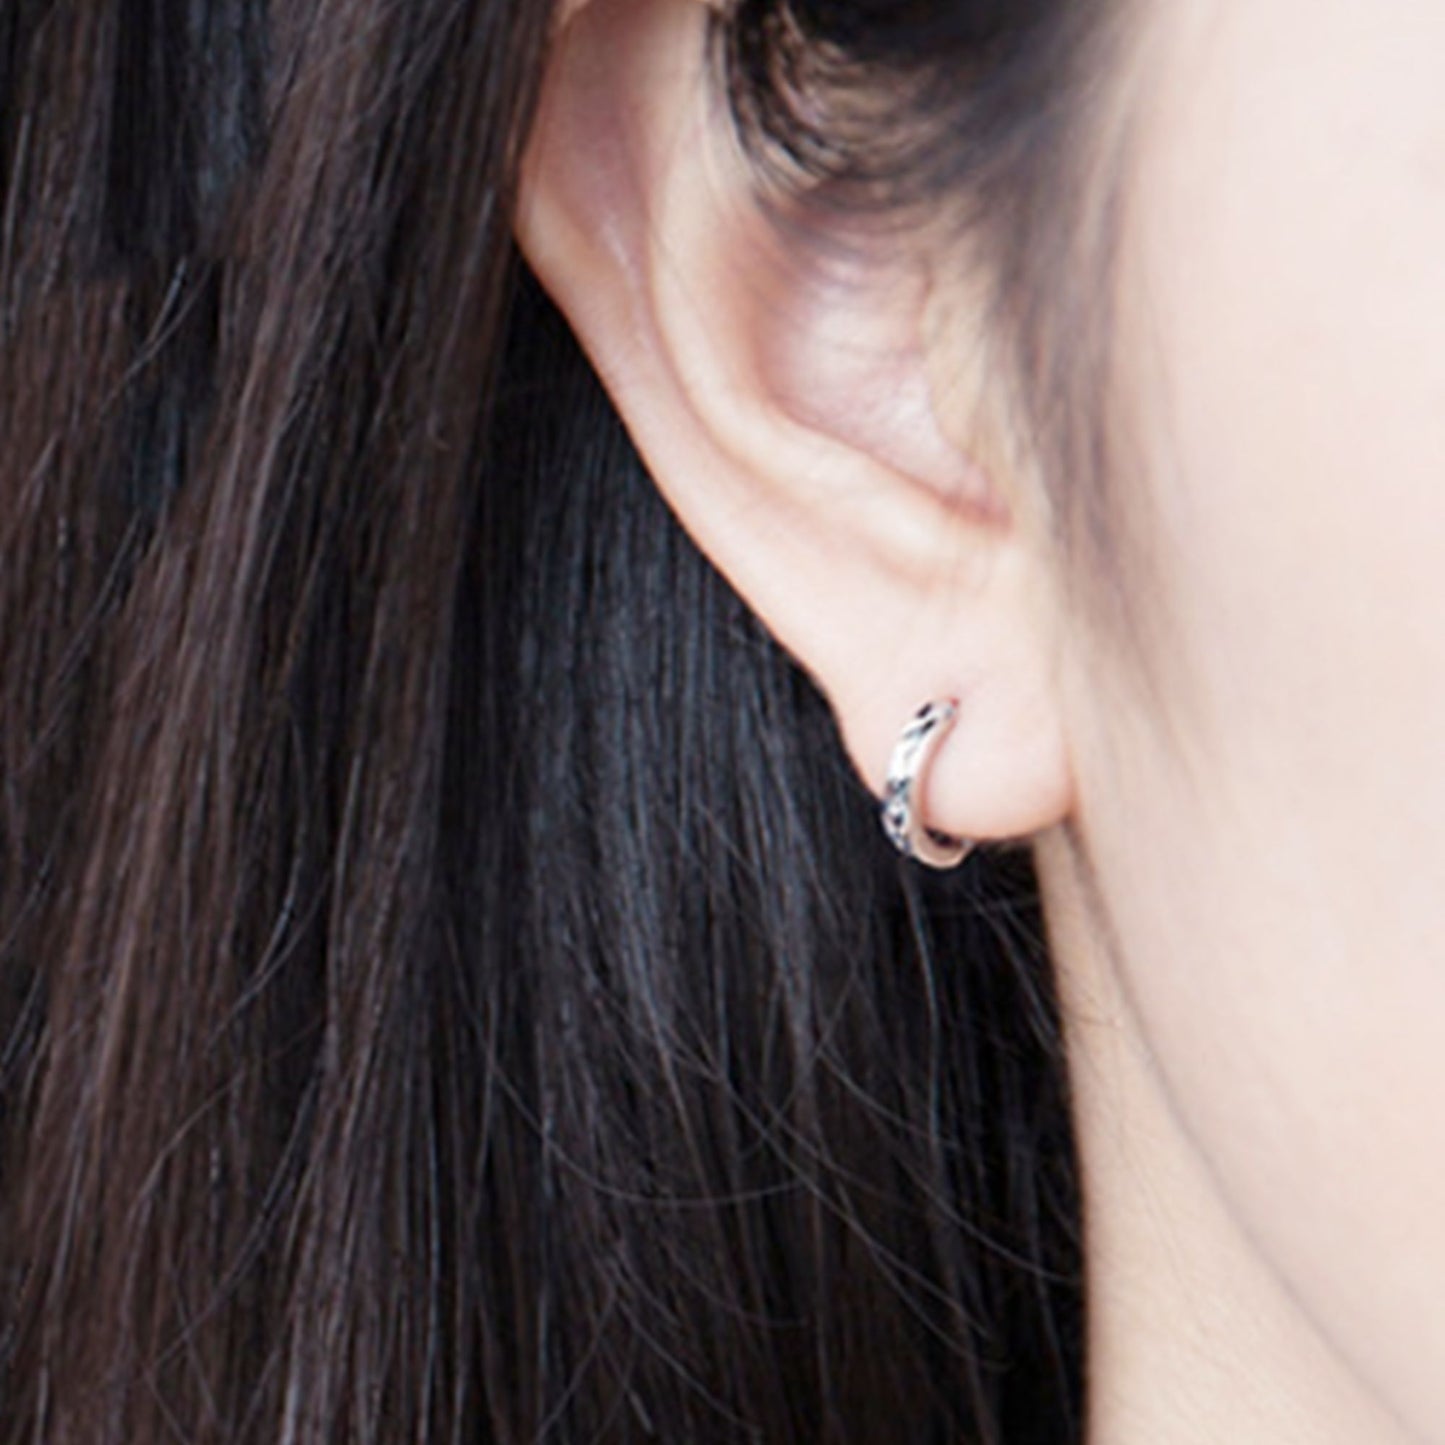 925 Sterling Silver Cuff Earrings with Reverse Worn Plain Diamond Cut Small Hoop - sugarkittenlondon